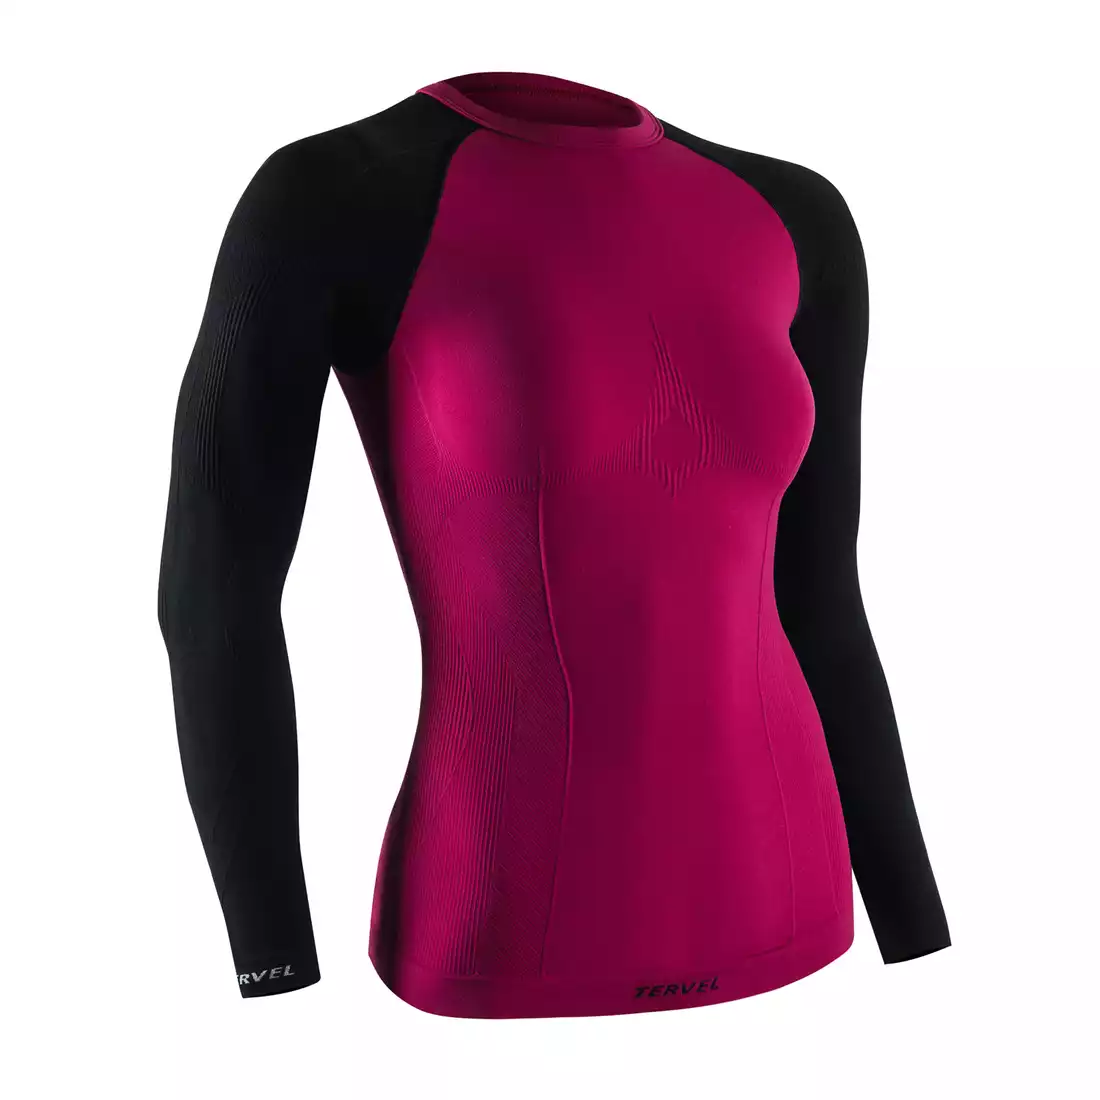 TERVEL COMFORTLINE 2002 - damska koszulka termoaktywna, długi rękaw, kolor: Róż (carmine)-czarny